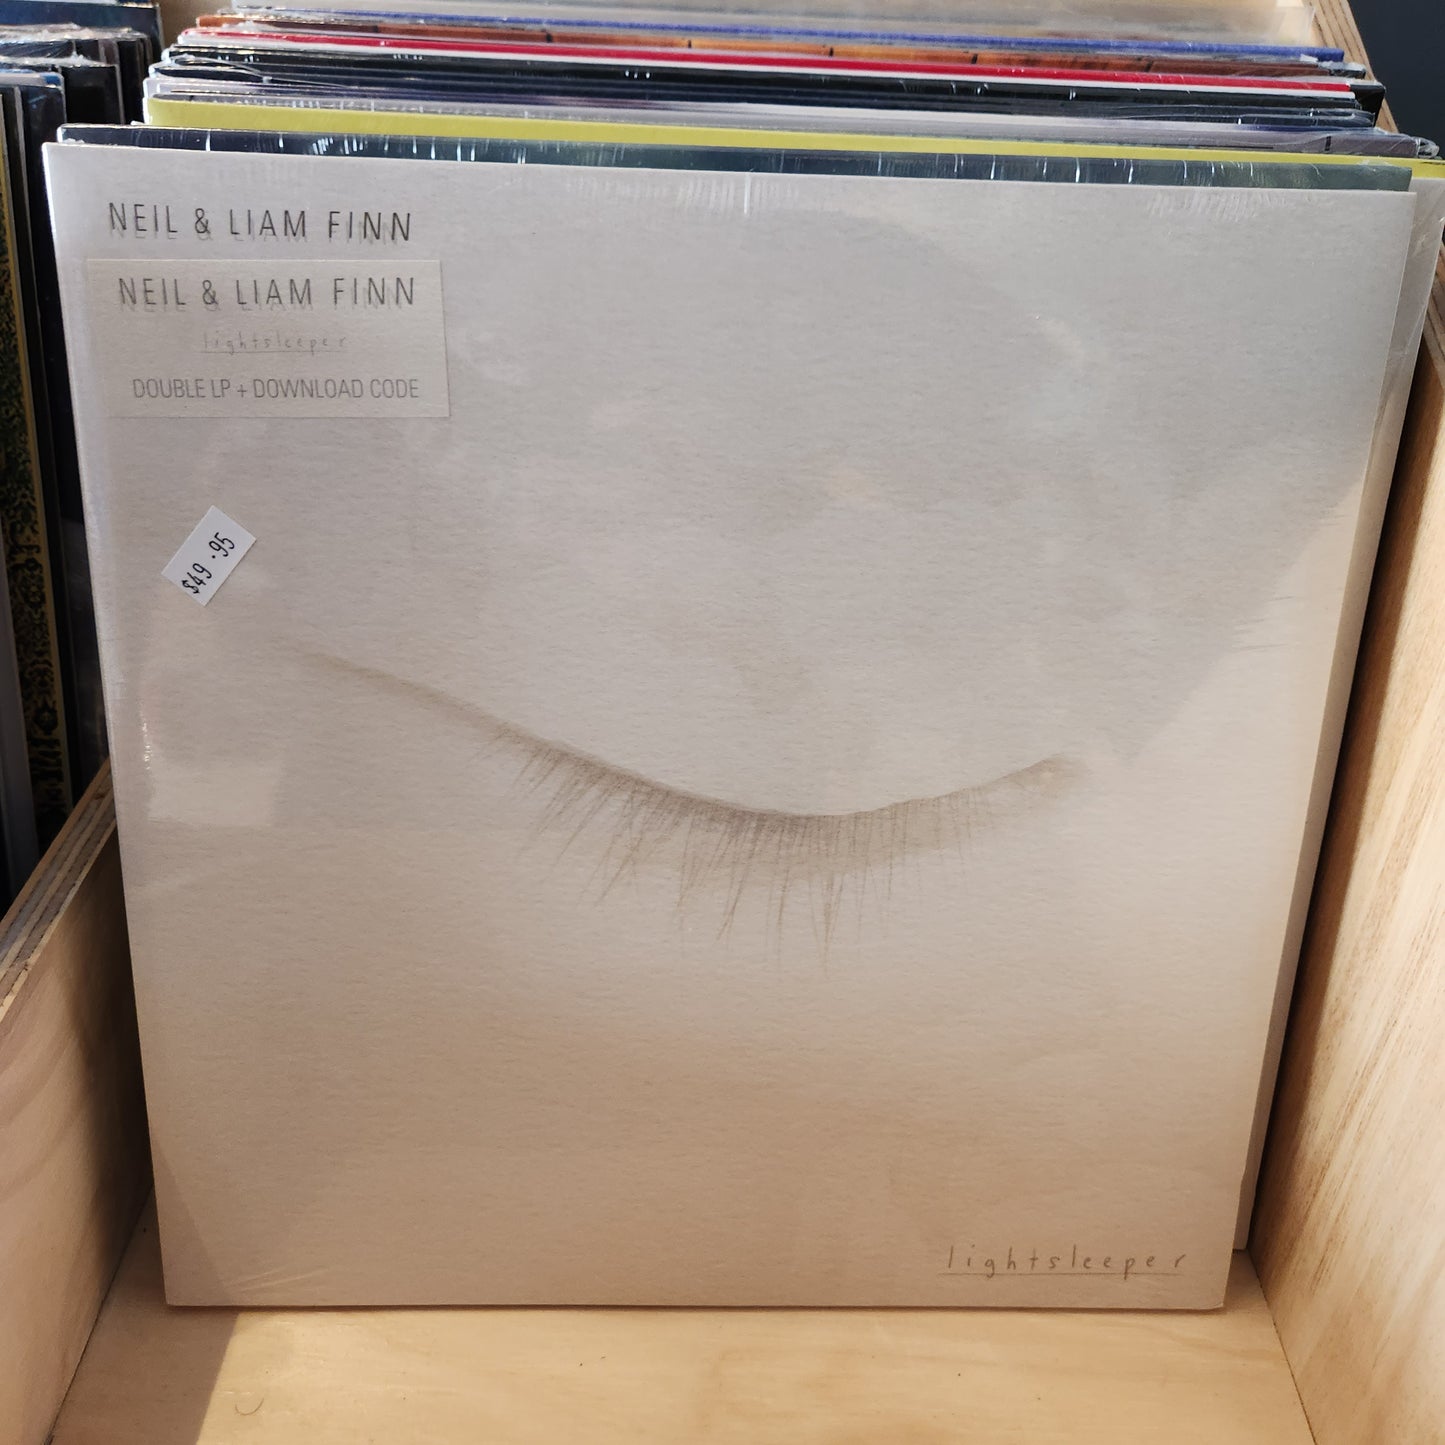 Neil and Liam Finn - Lightsleeper - Vinyl LP